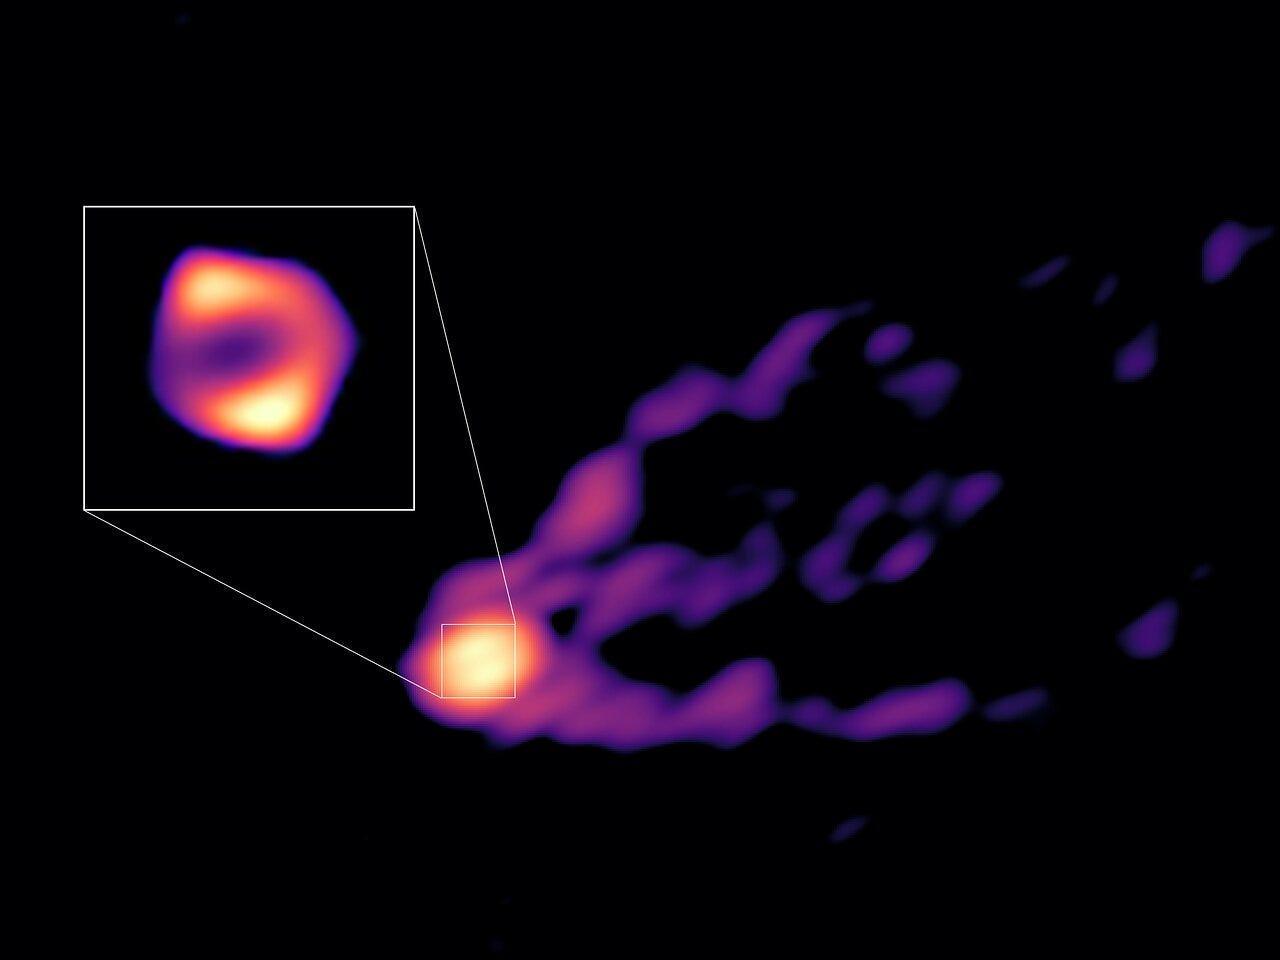 楕円銀河｢M87｣の中心部にある巨大ブラックホールから噴出する物質が撮影された画像と、ブラックホールを取り巻く｢降着円盤｣と呼ばれるガスを拡大した画像。